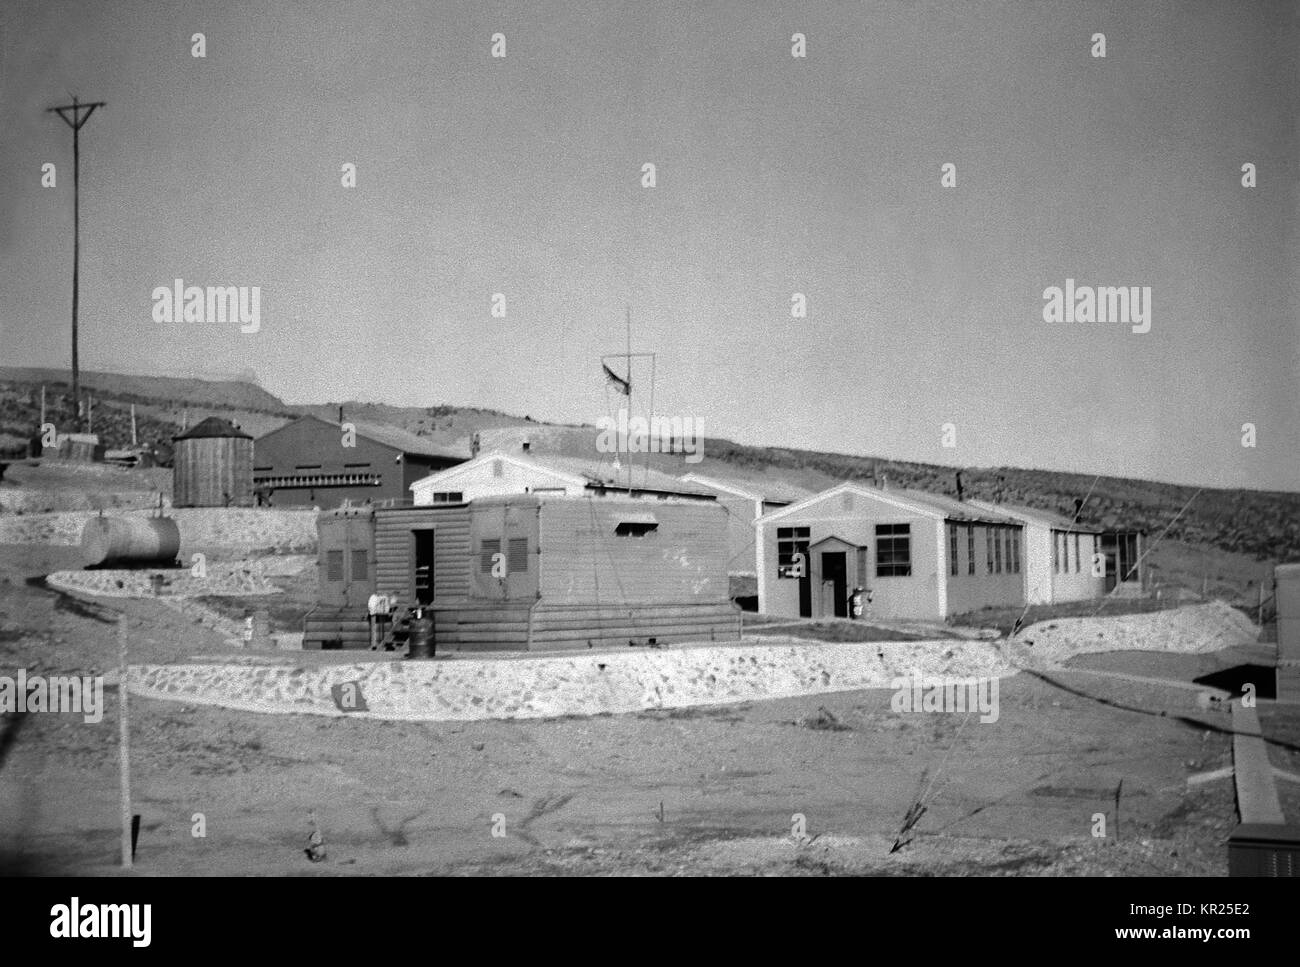 Stazione LORAN in Corea, nel XIV distretto CG. Loran sta per long range navigation, e è una lunga distanza di navigazione radio stazione a terra che trasmette sincronizzata radio degli impulsi di onda, 1954. Immagine cortesia CDC. Foto Stock